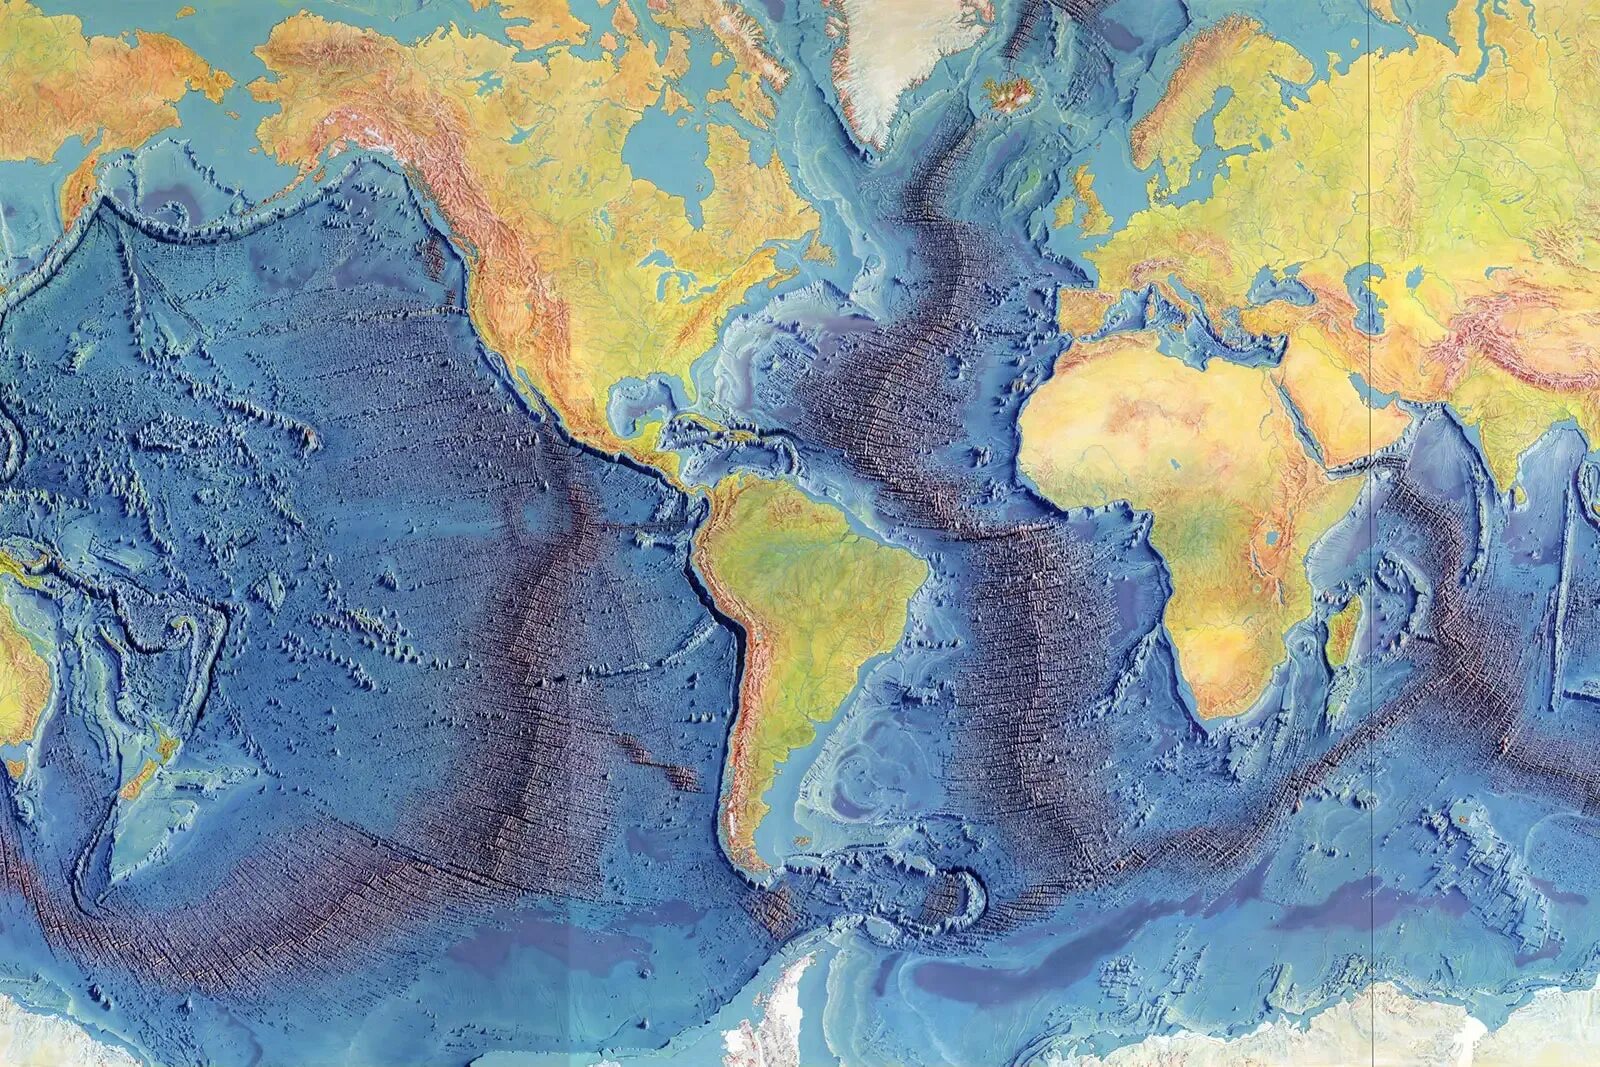 Срединно Океанические хребты Атлантического океана. Рельеф дна Атлантического океана. Срединно-Атлантический хребет. Карта дна Атлантического океана. Какой рельеф атлантического океана